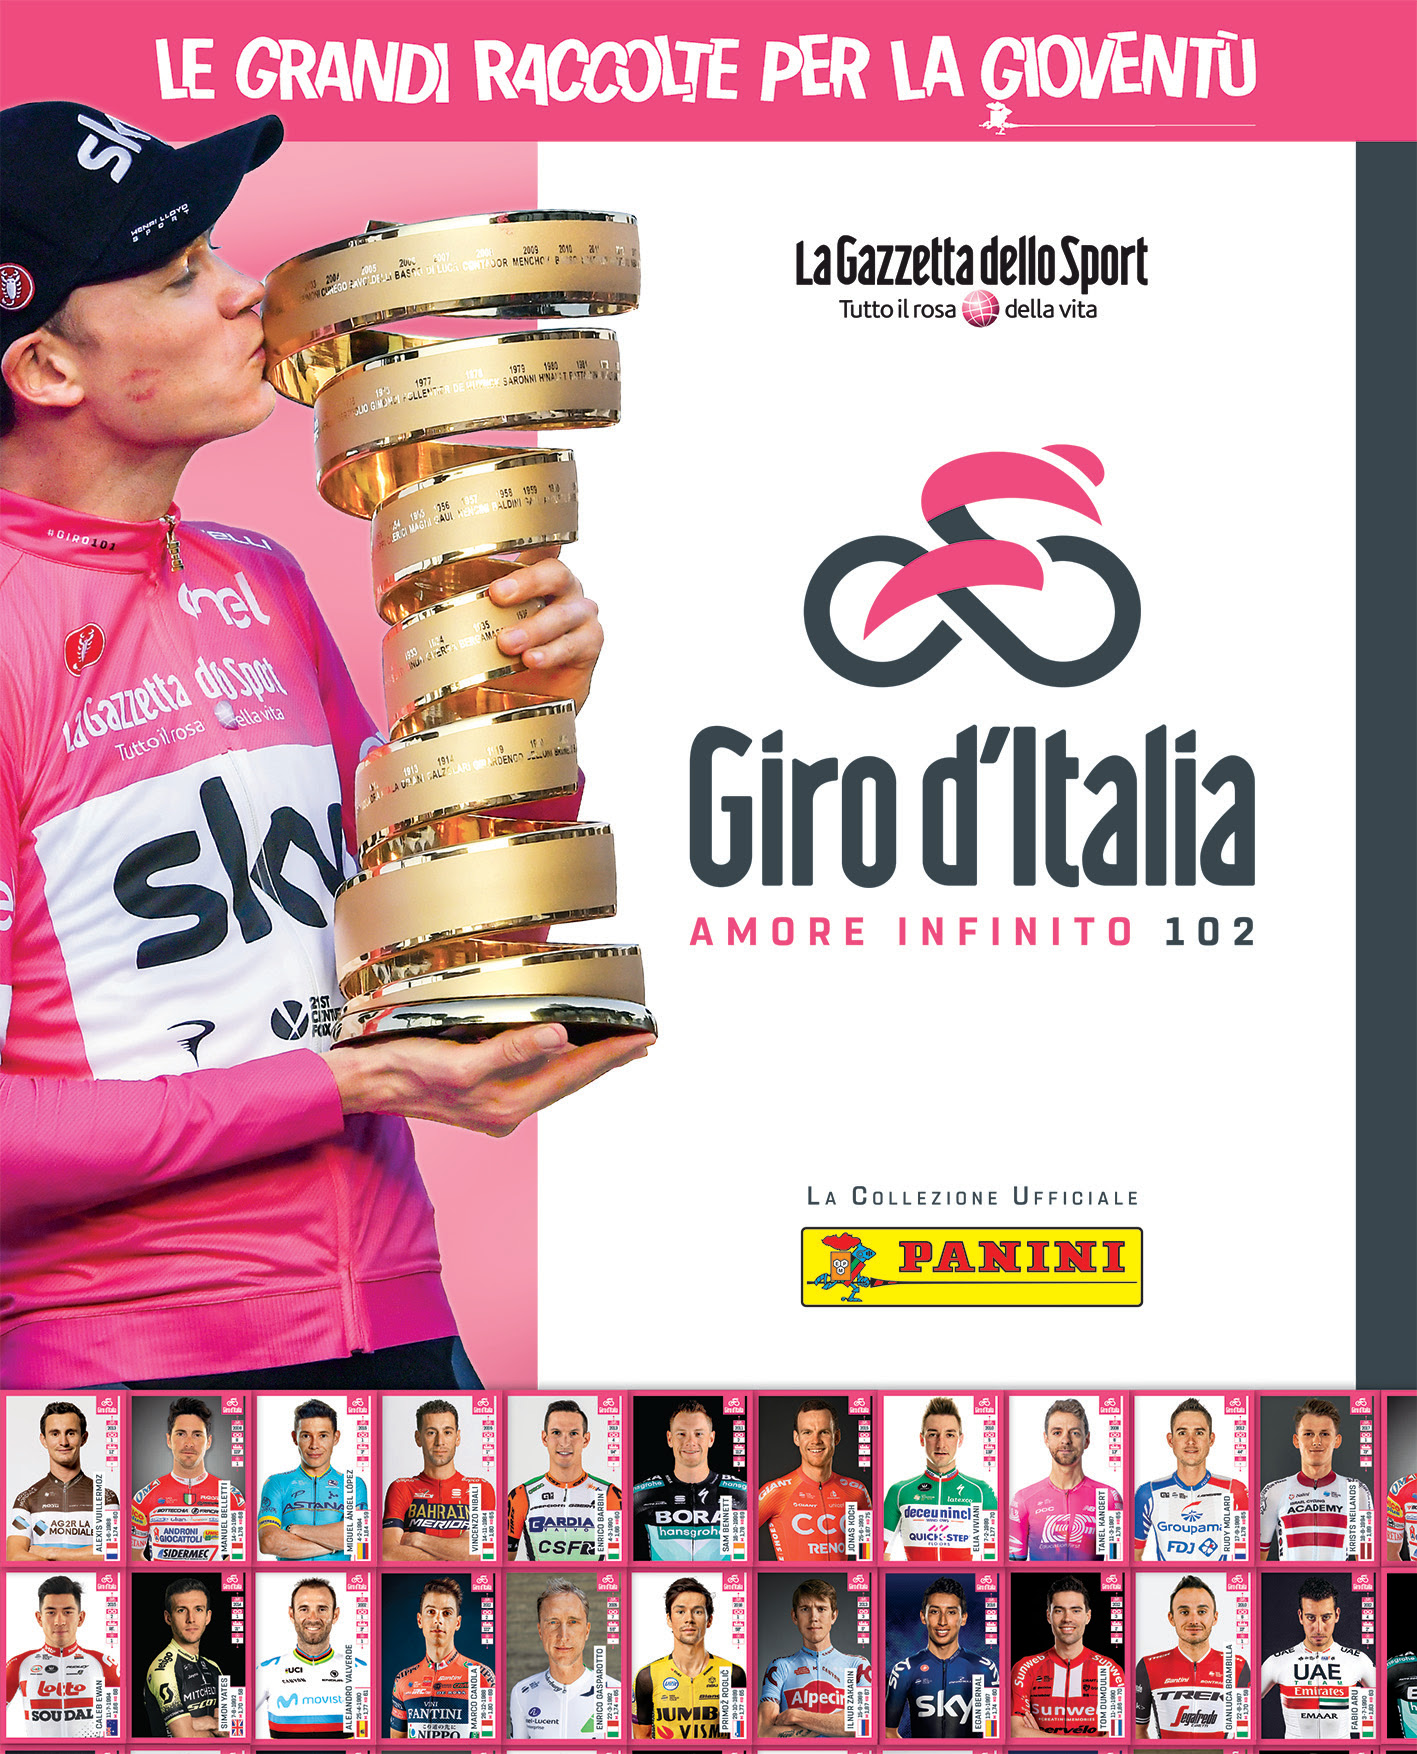 La nuova collezione sul “Giro d’Italia”